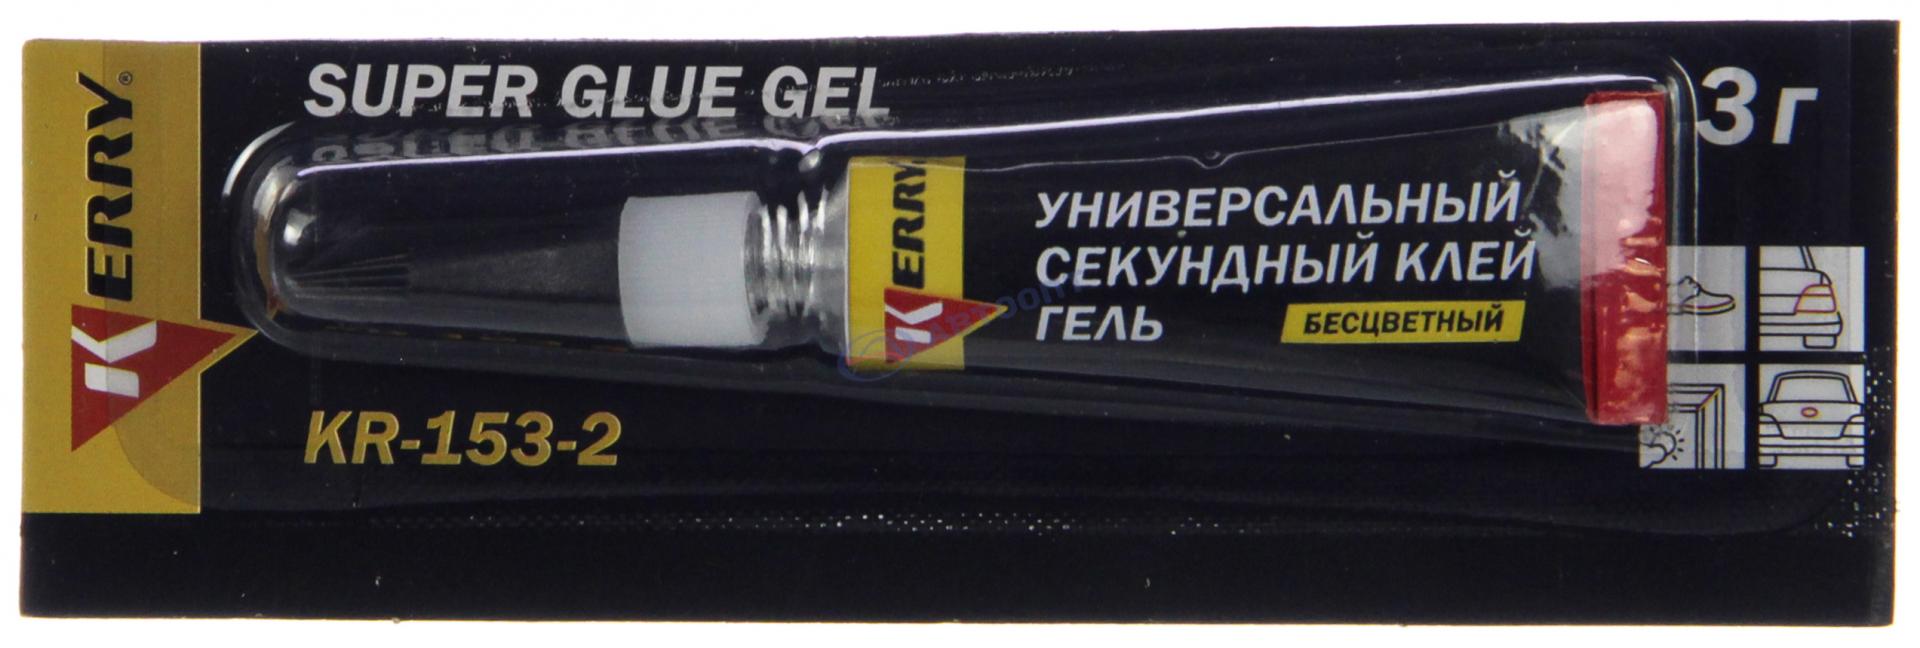 Клей Универсальный секундный гель SUPER GLUE GEL 3 г KR-153-2 KERRY (г.Москва)